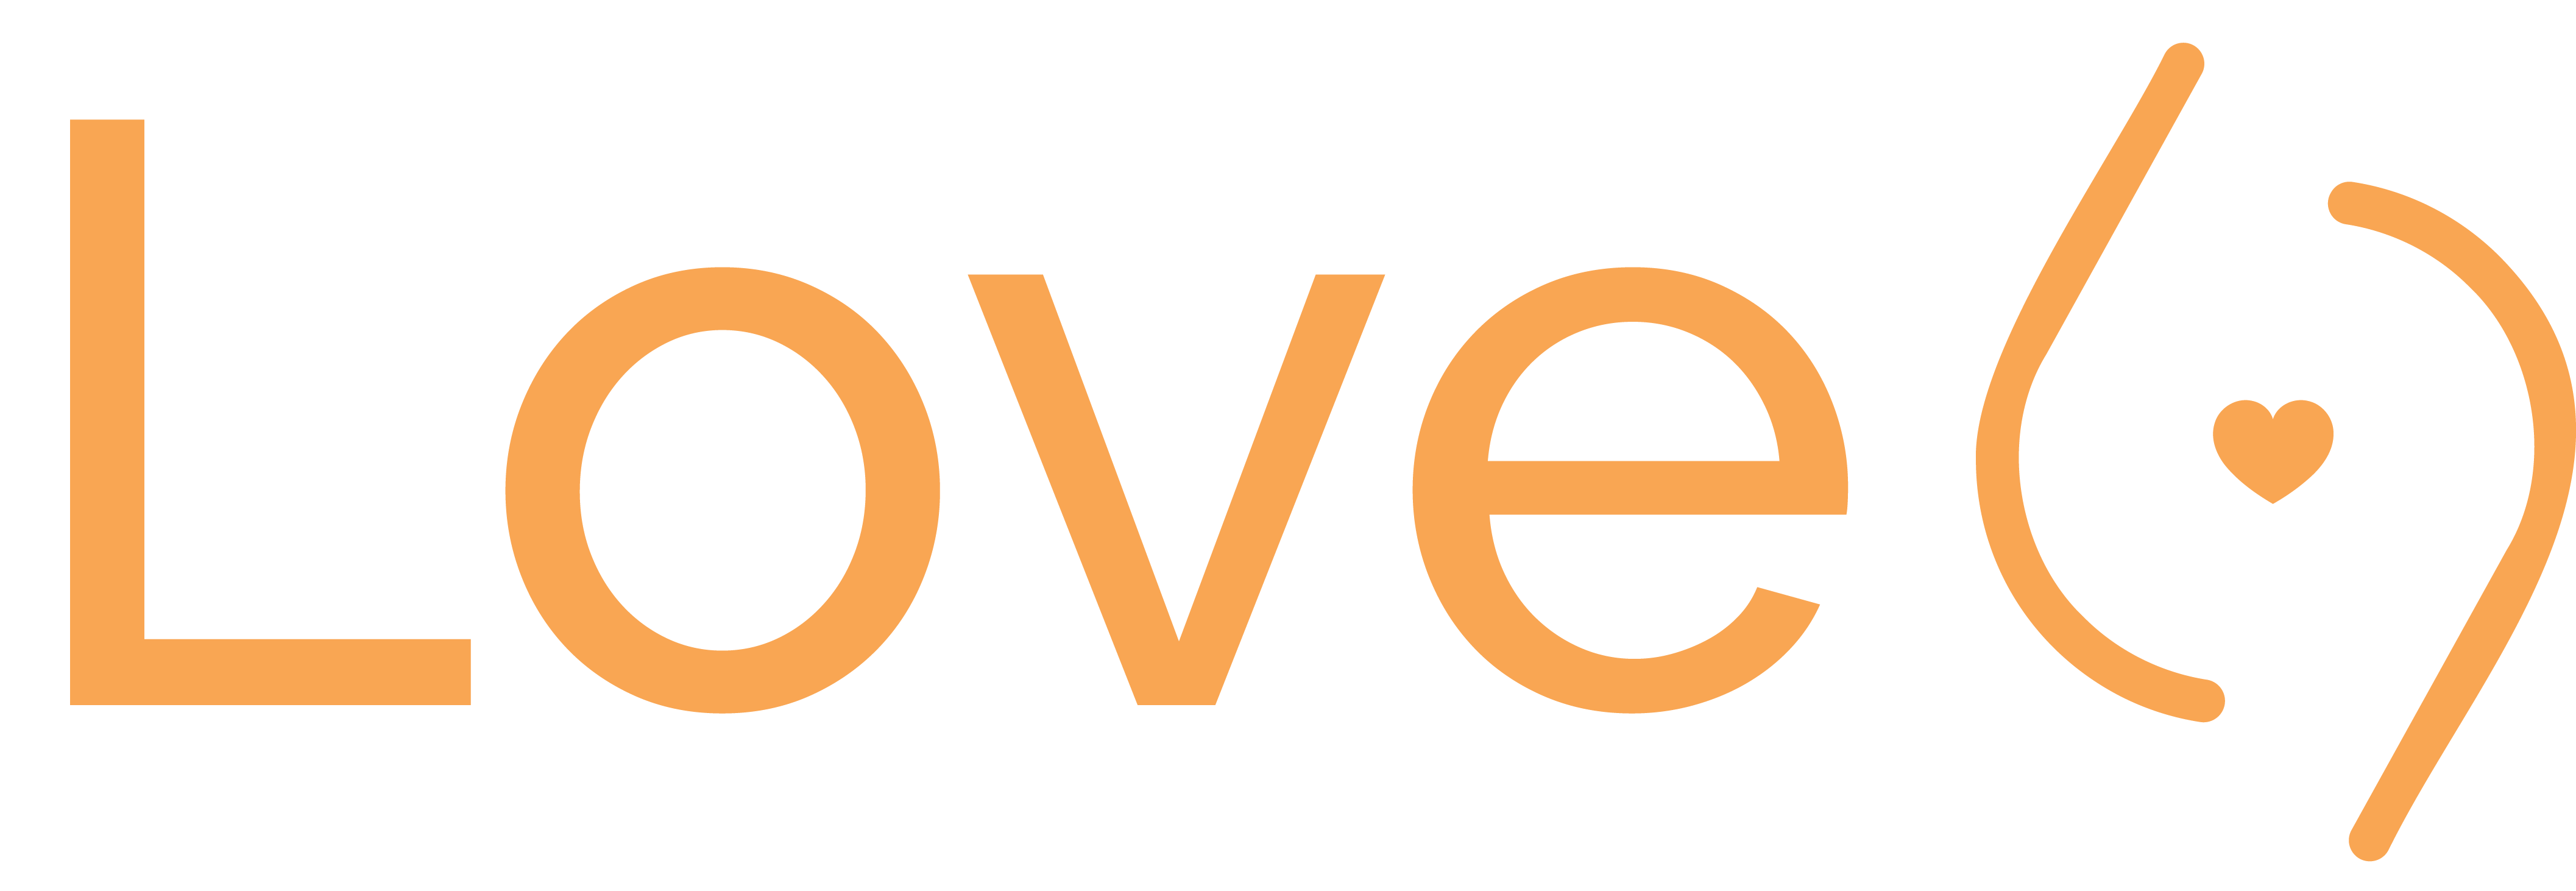 Logo pentru site de escorte love69